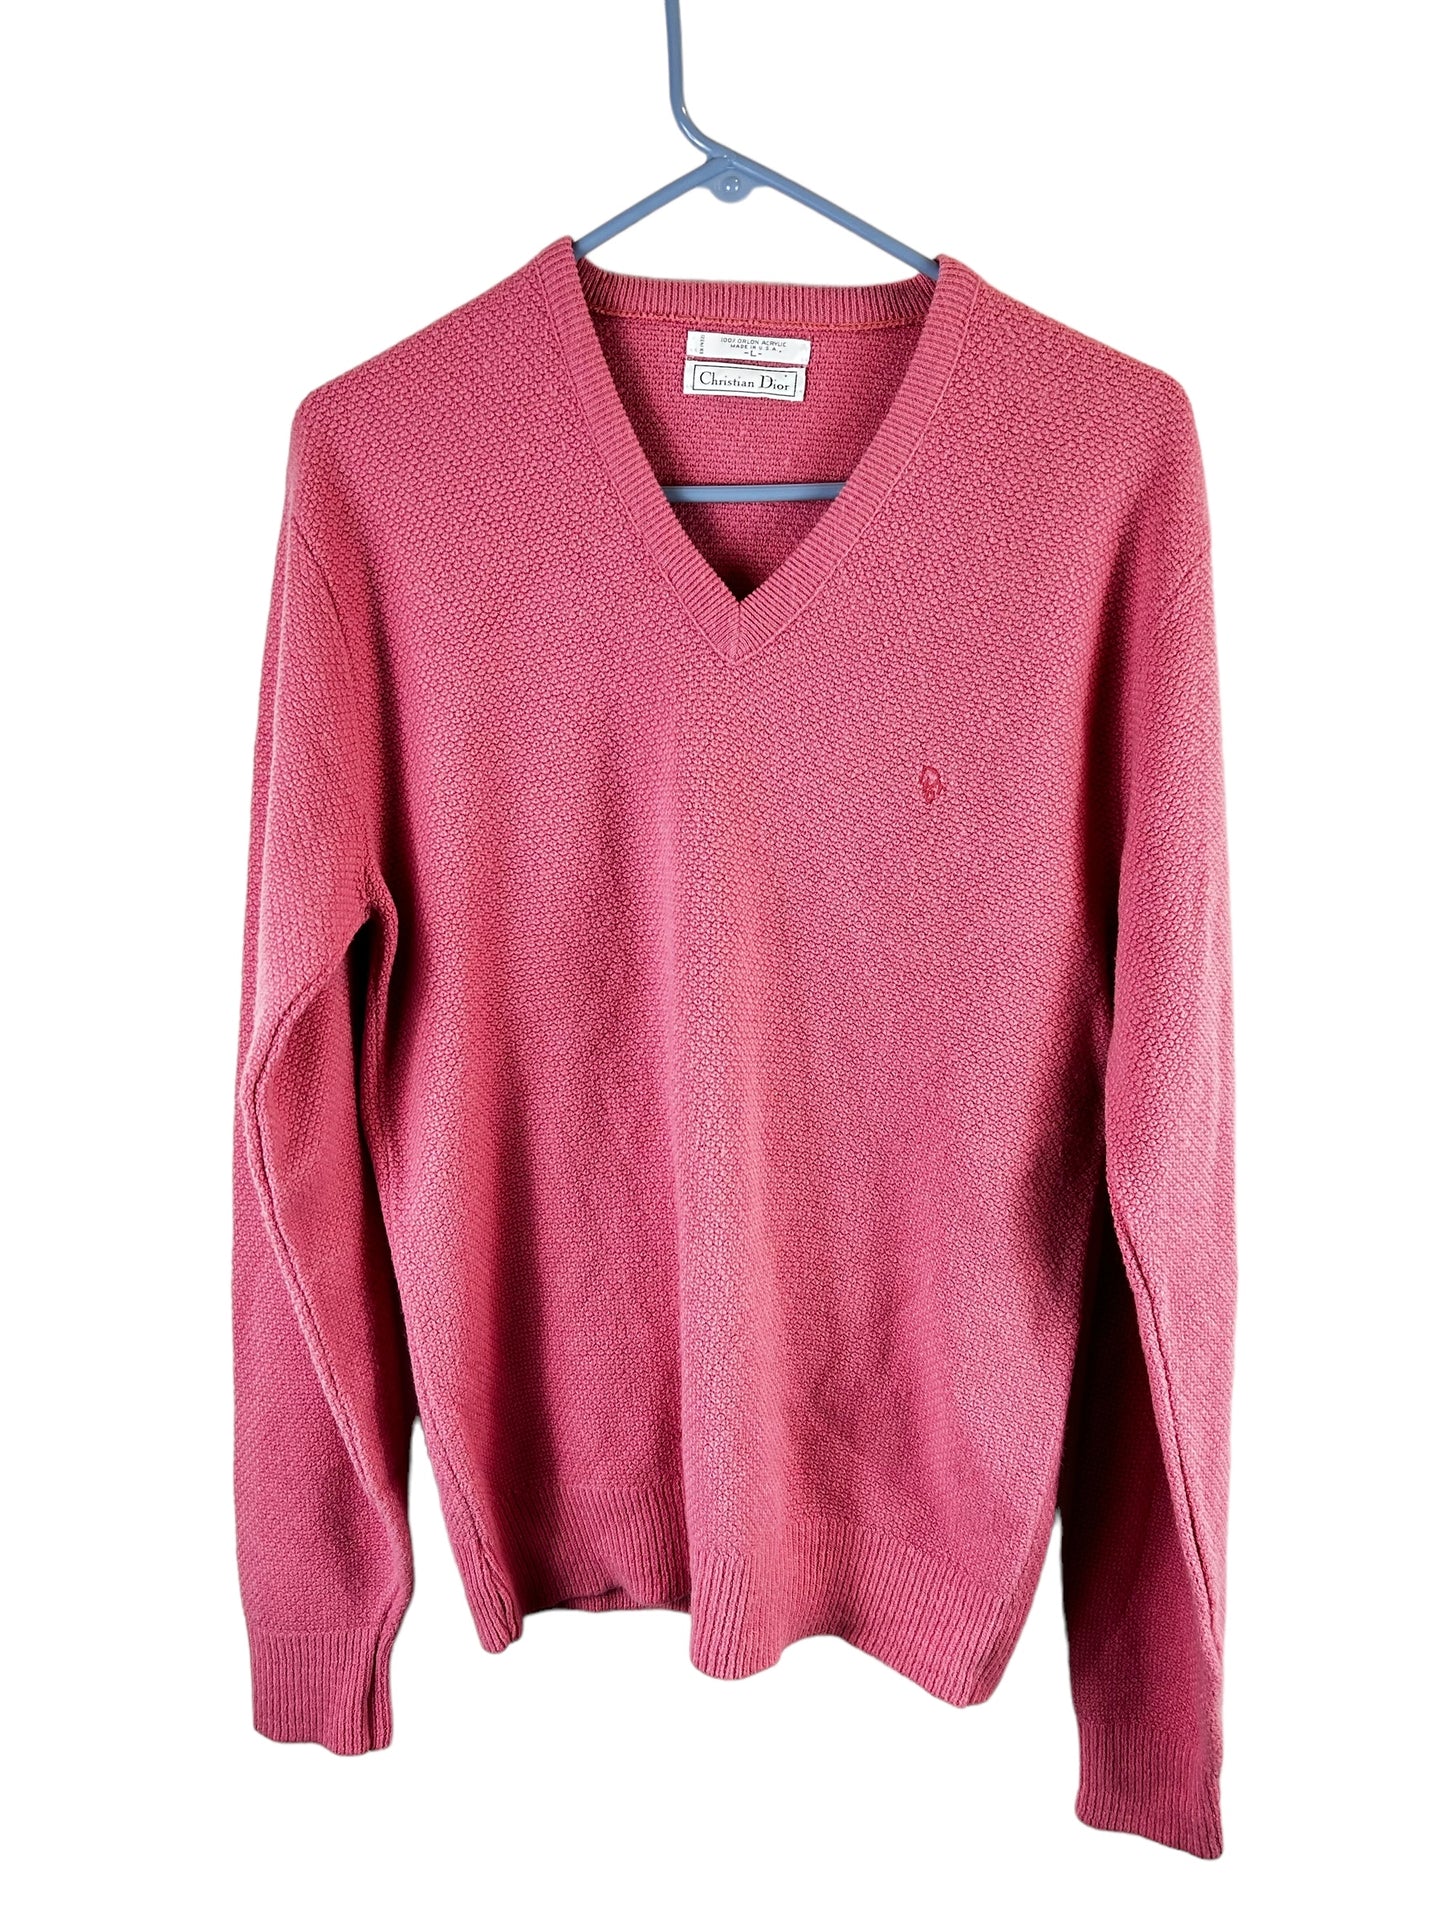 Vintage Christian Dior Sweater Mauve Pink V-Neck Pullover Logo Women's